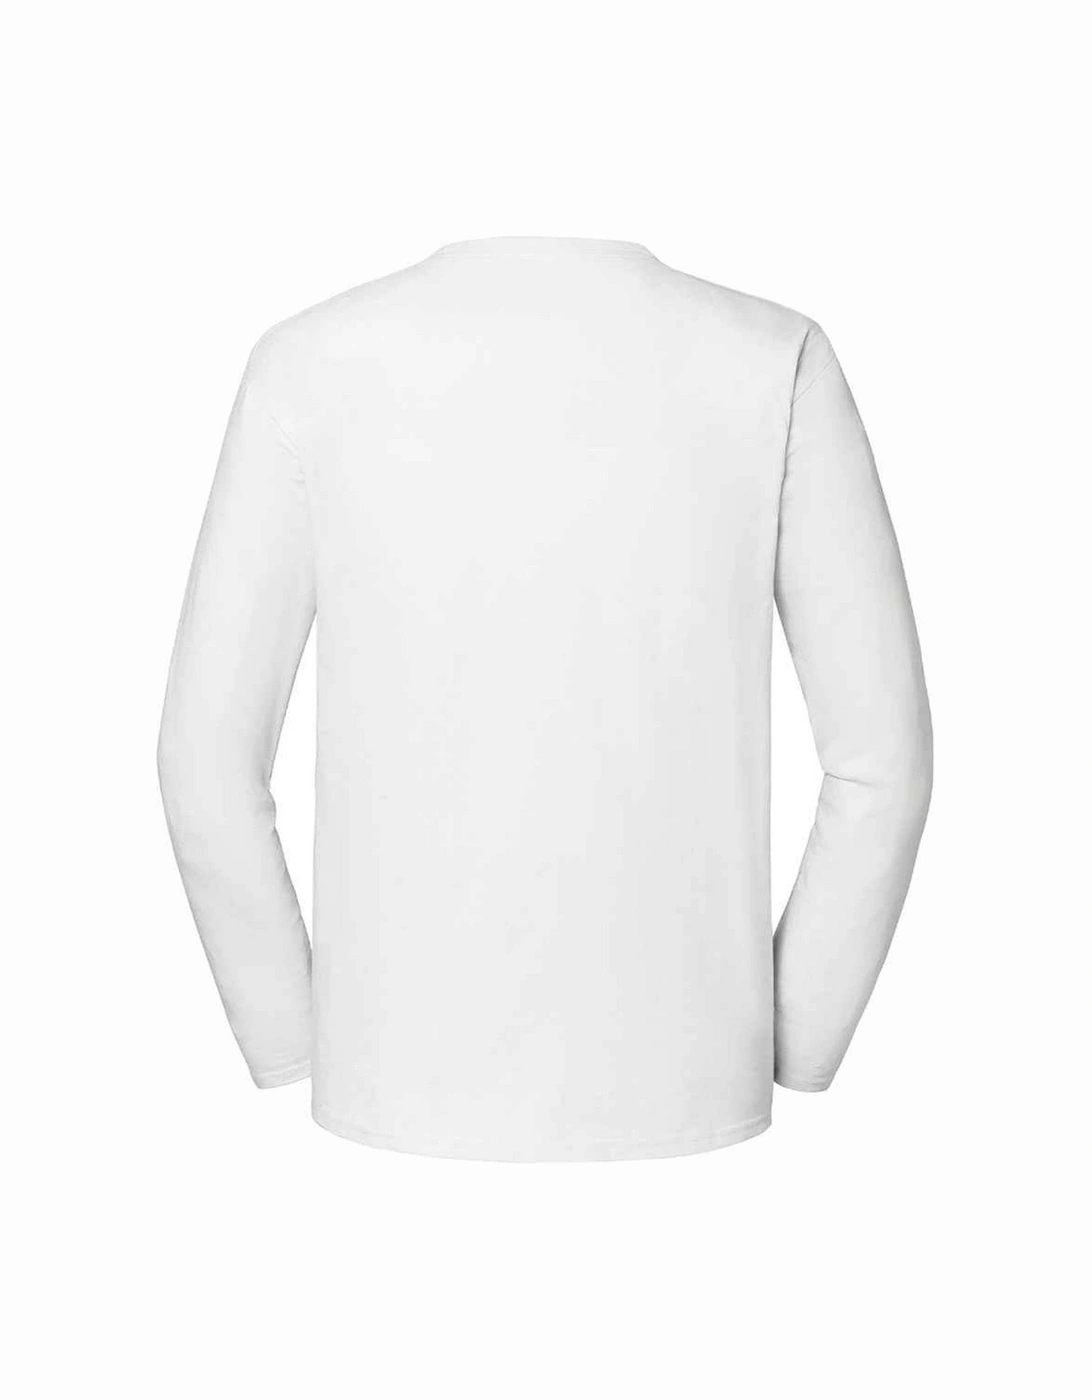 Unisex Adult Iconic 195 Premium Long-Sleeved T-Shirt